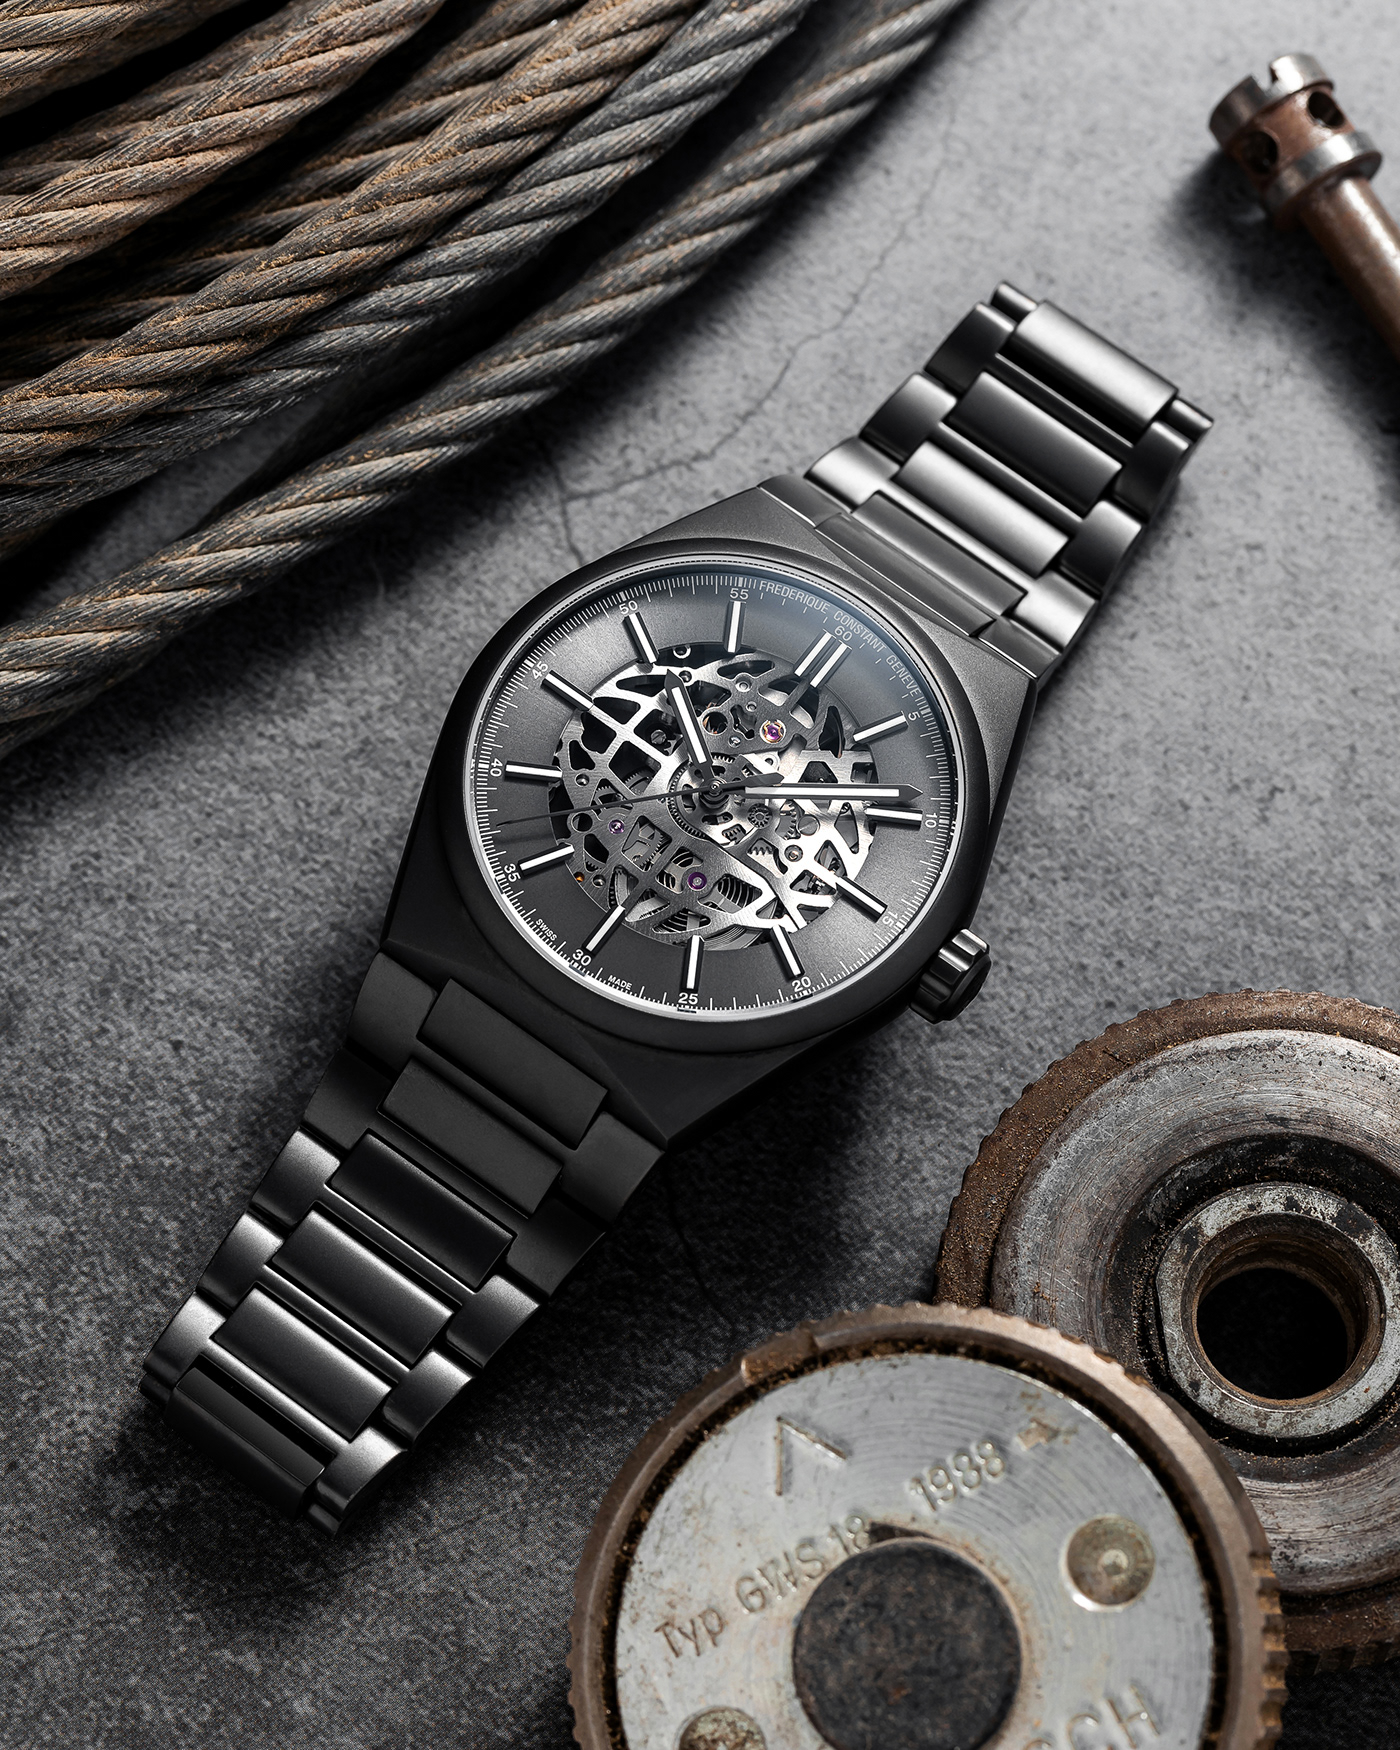 adobe lightroom Adobe Photoshop luxury watches Product Photography swiss watches watch photography Watches wristwatch